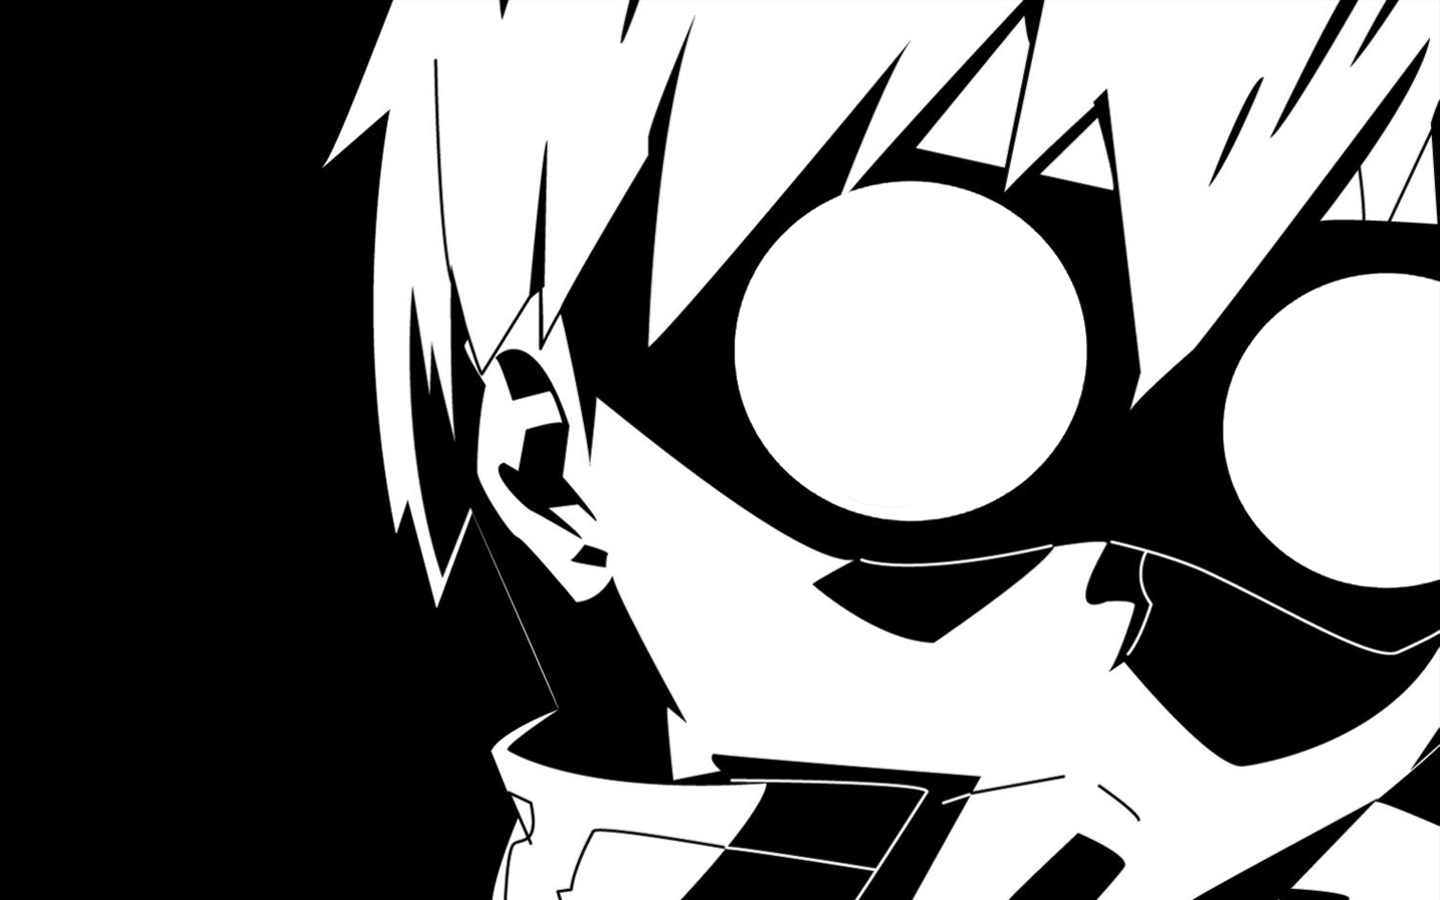 schwarz weiß anime tapete,karikatur,einfarbig,schwarz und weiß,erfundener charakter,strichzeichnungen